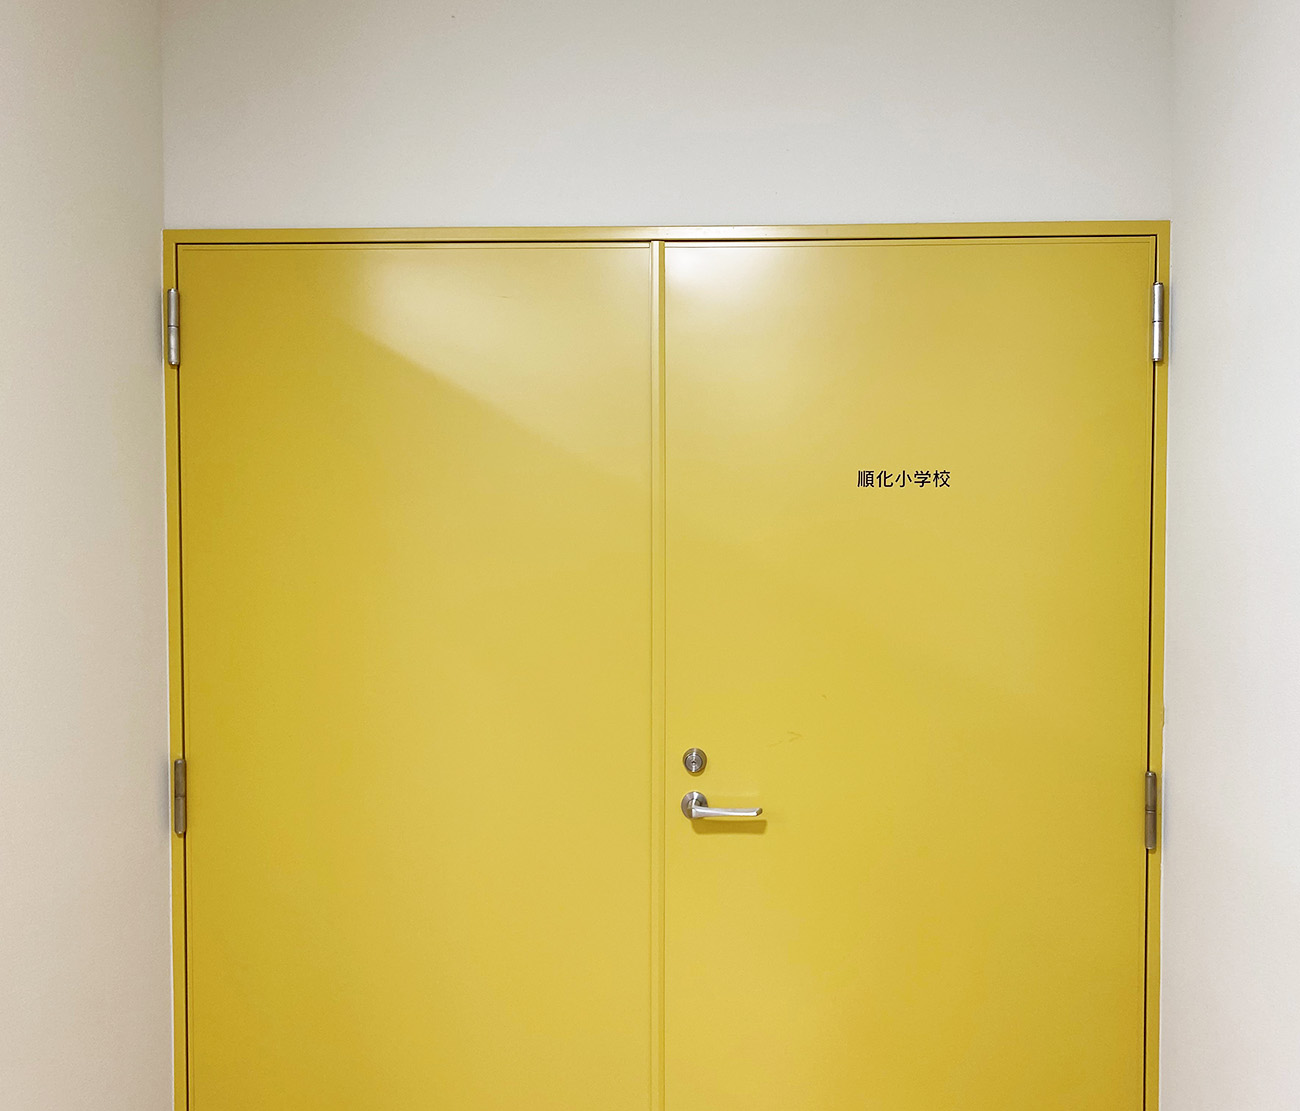 学校と公民館を仕切る施錠可能な扉の写真。